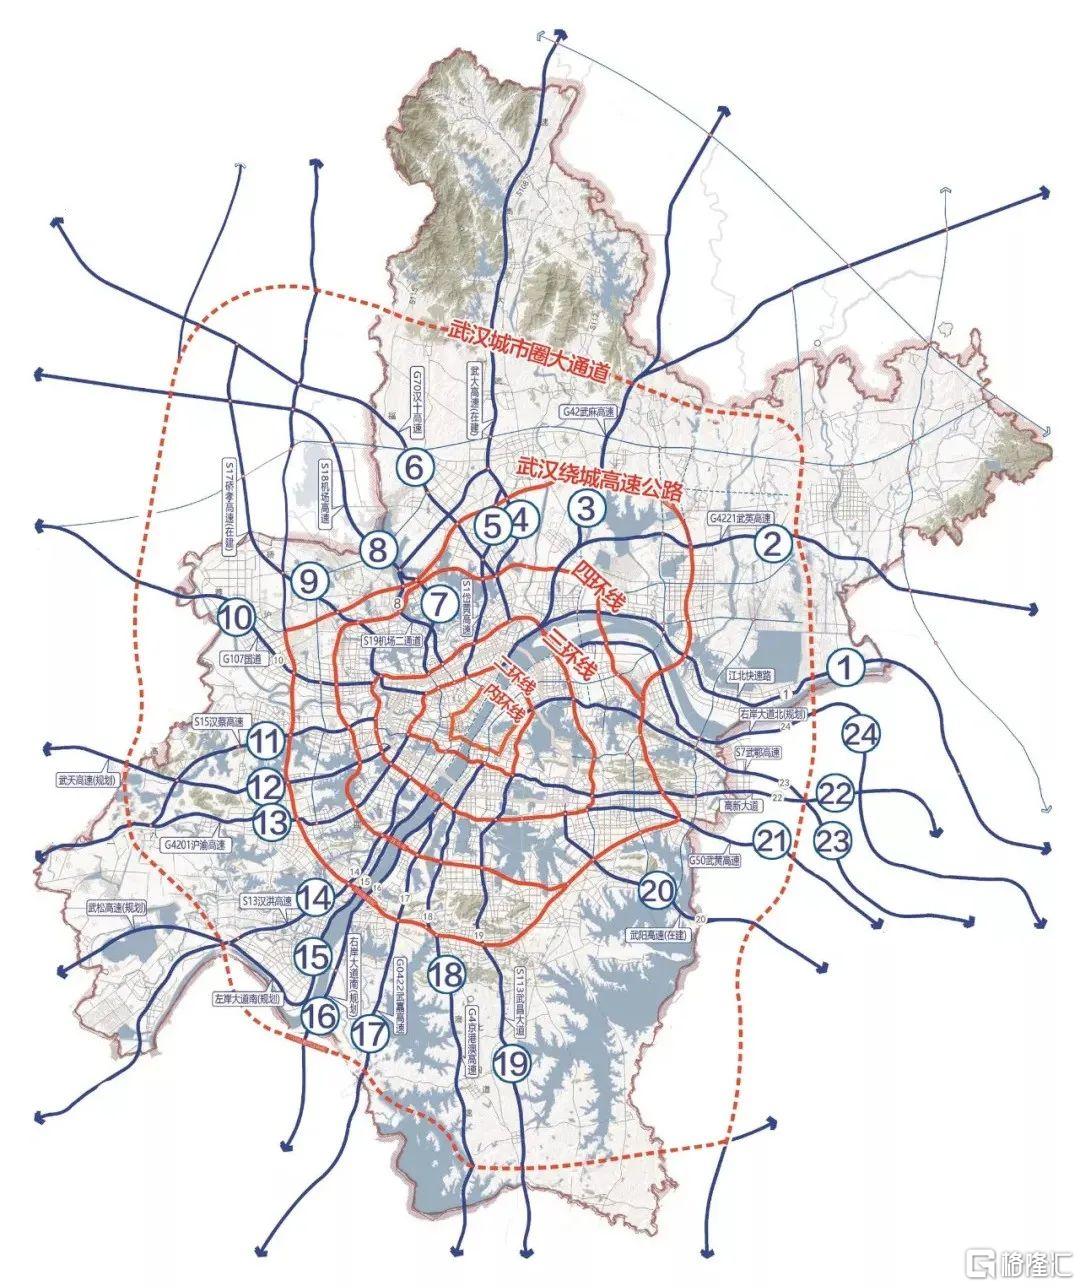 相比已开通的地铁,武汉的交通圈明显更发达.